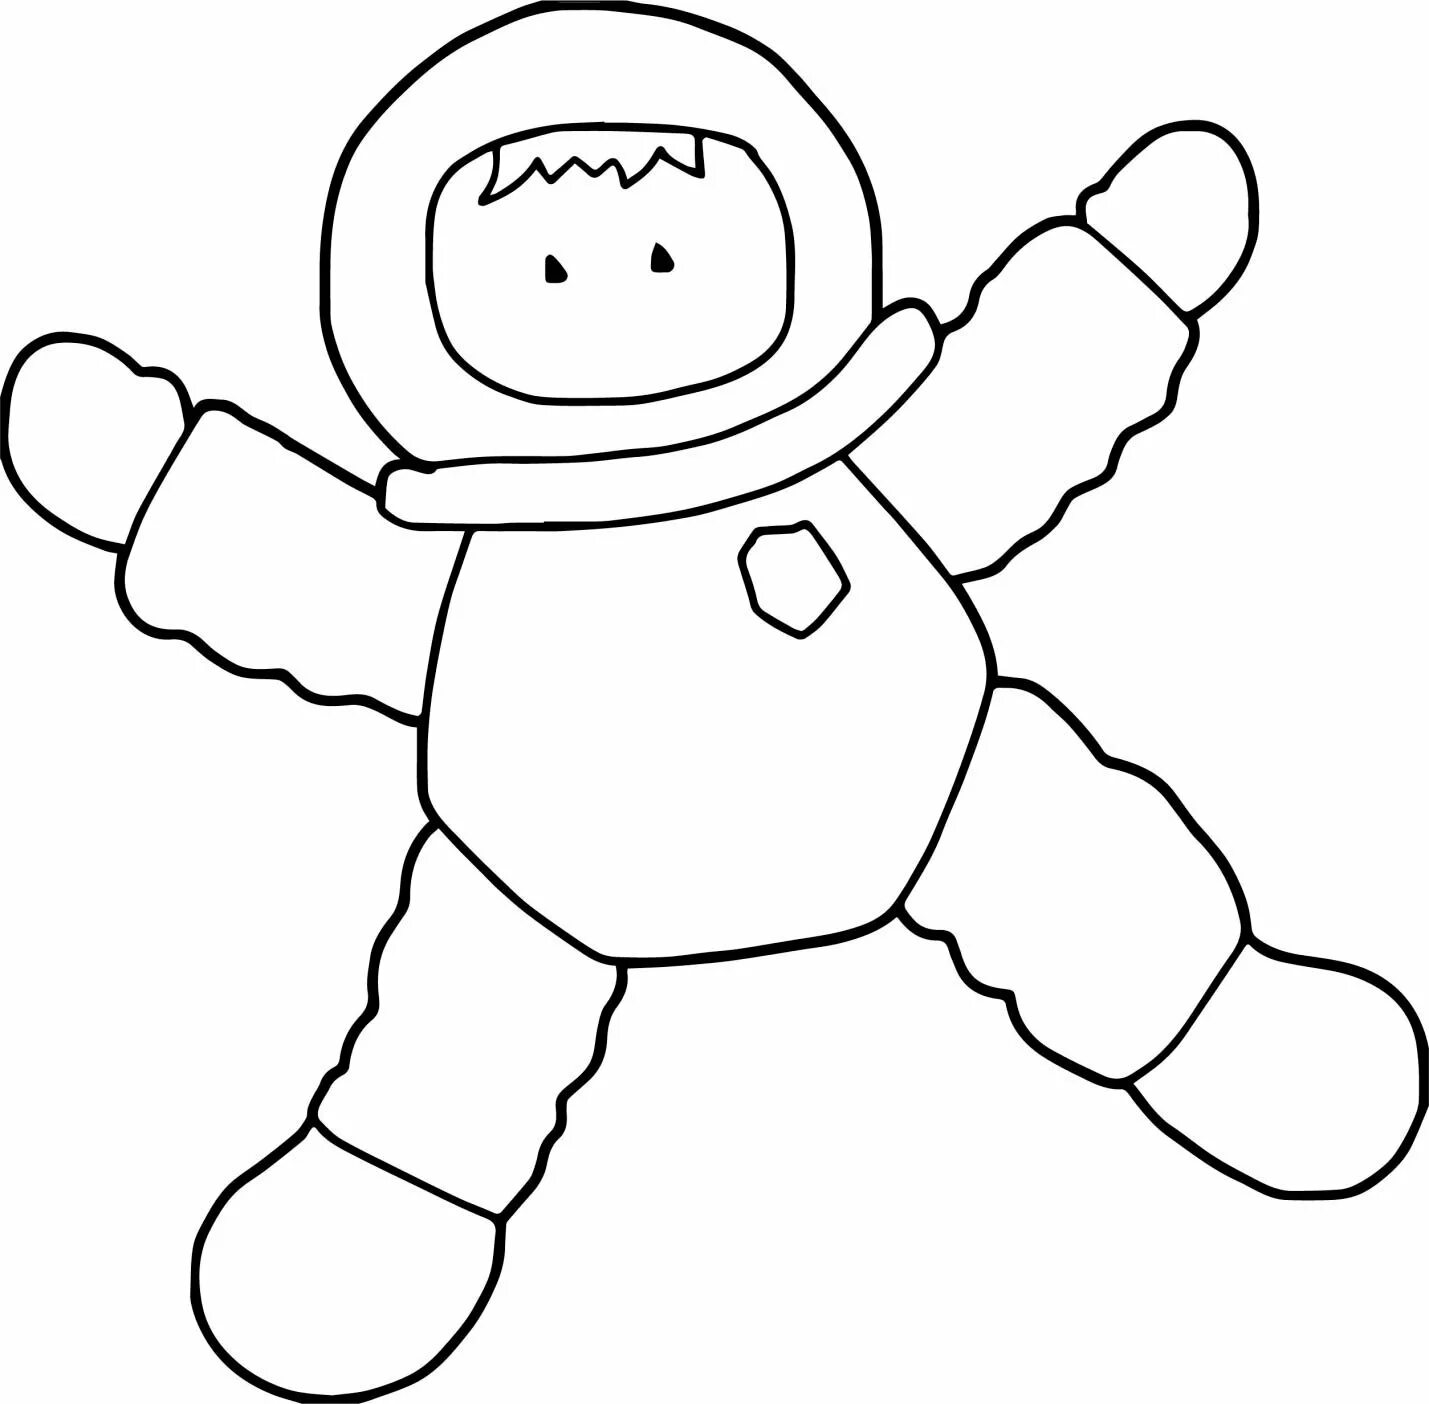 Космонавт раскраска для детей. Космонавт трафарет для детей. Космонавт картинка для детей раскраска. Космонавт раскраска для малышей.